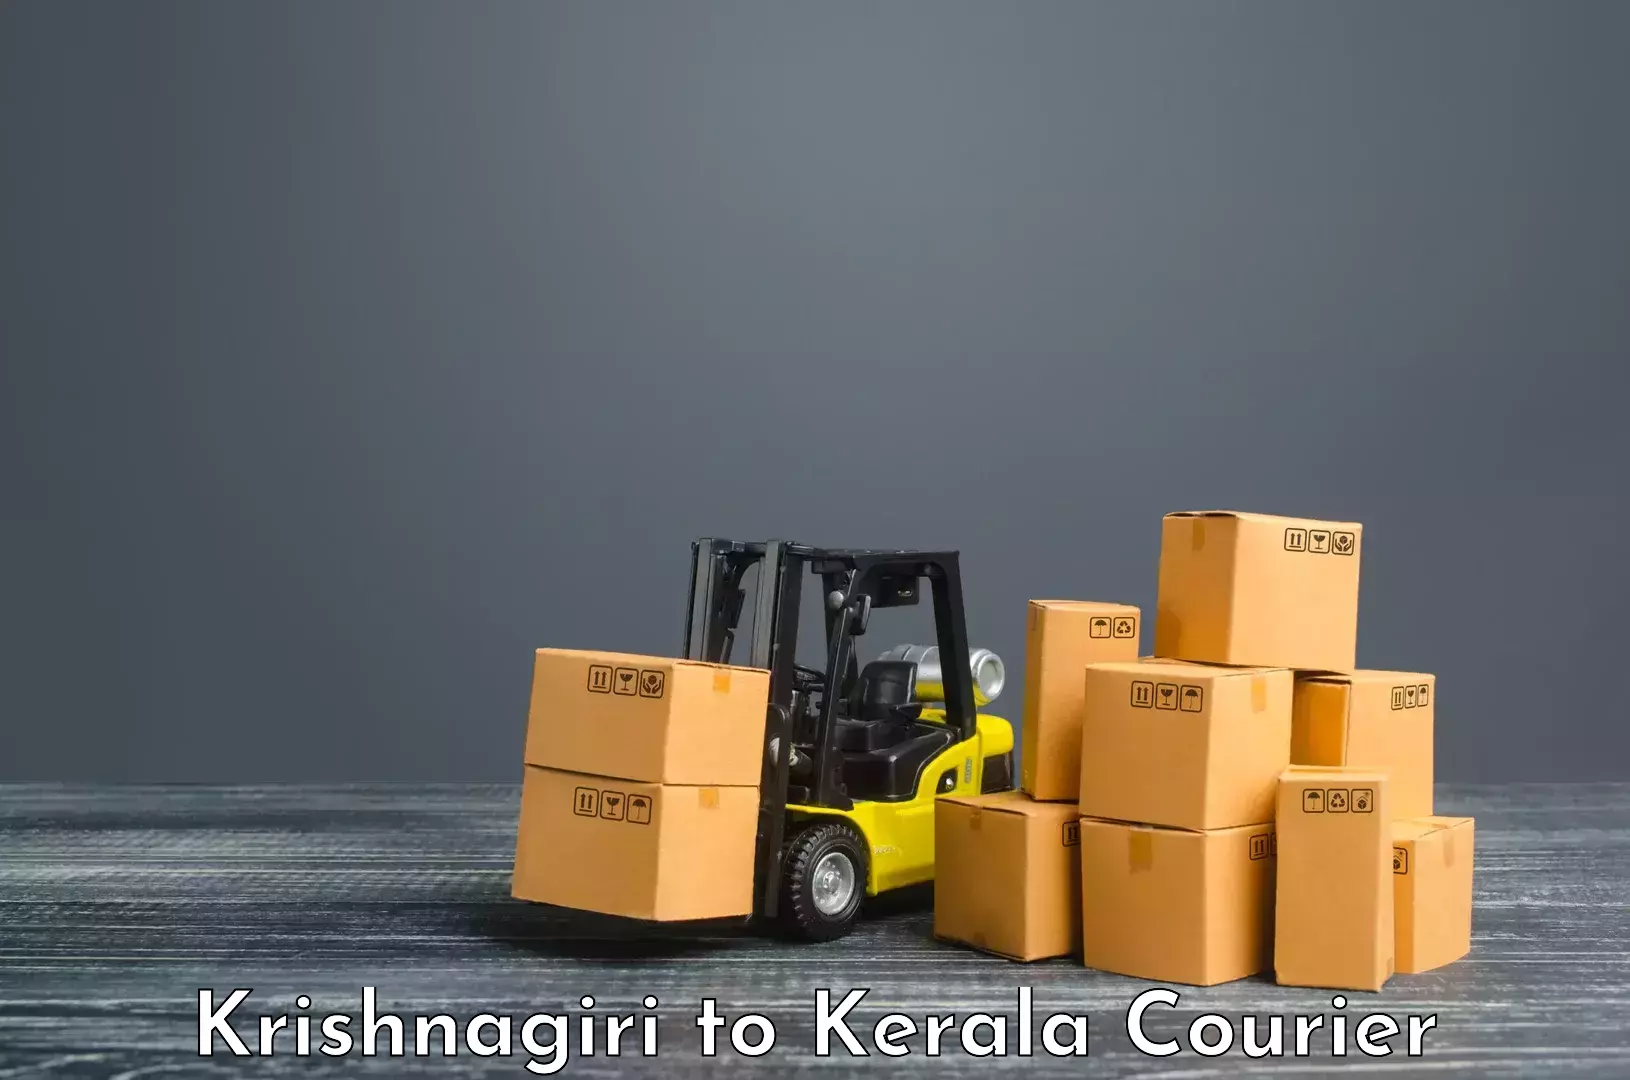 Customer-centric shipping Krishnagiri to Haripad